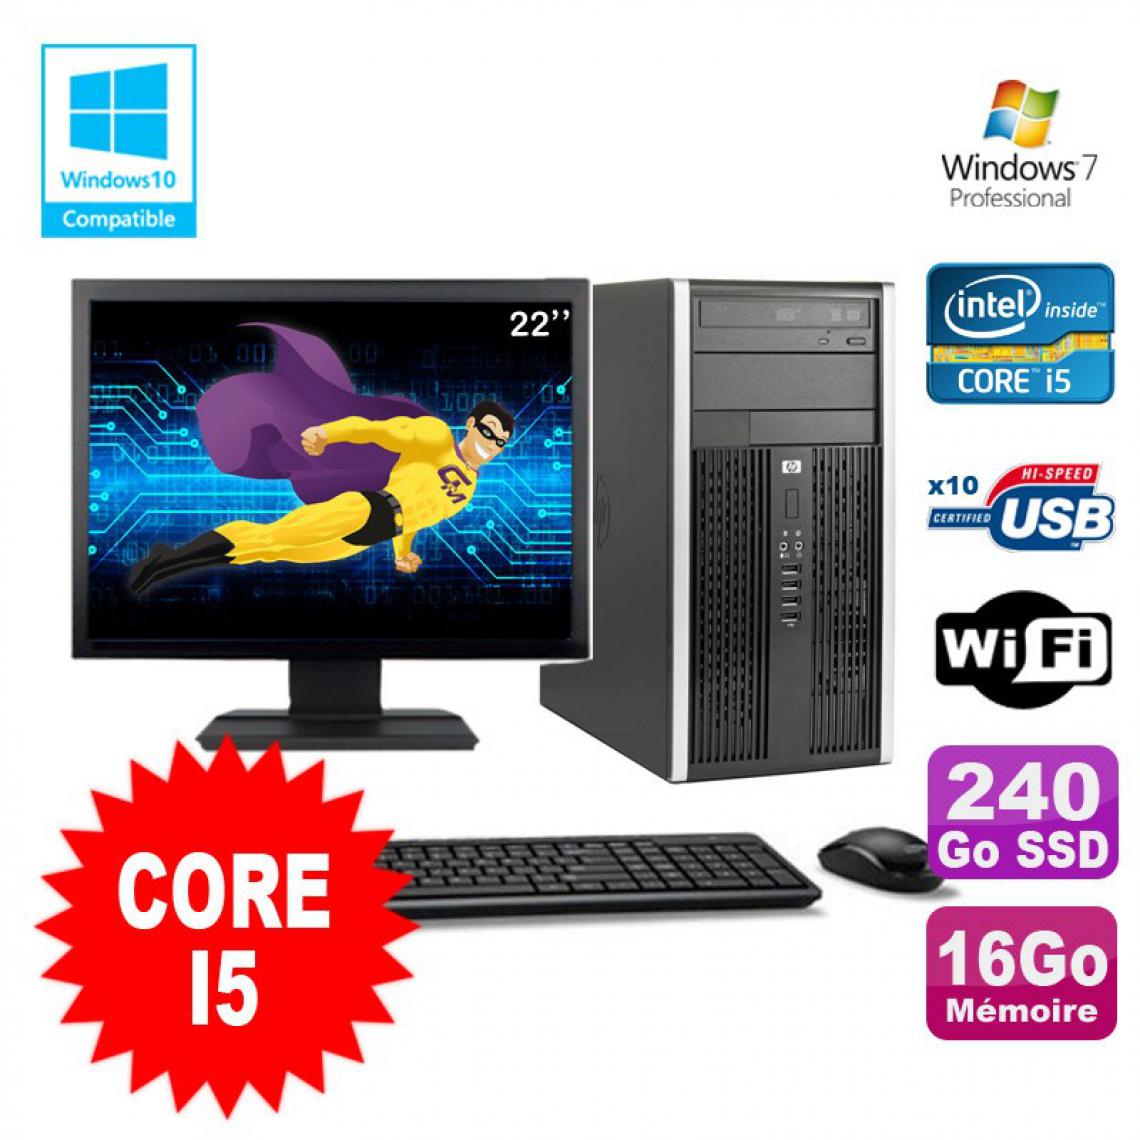 Hp - Lot PC Tour HP Pro 6200 Core I5 3.1Ghz 16Go 240Go SSD Graveur WIFI W7 + Ecran 22" - PC Fixe